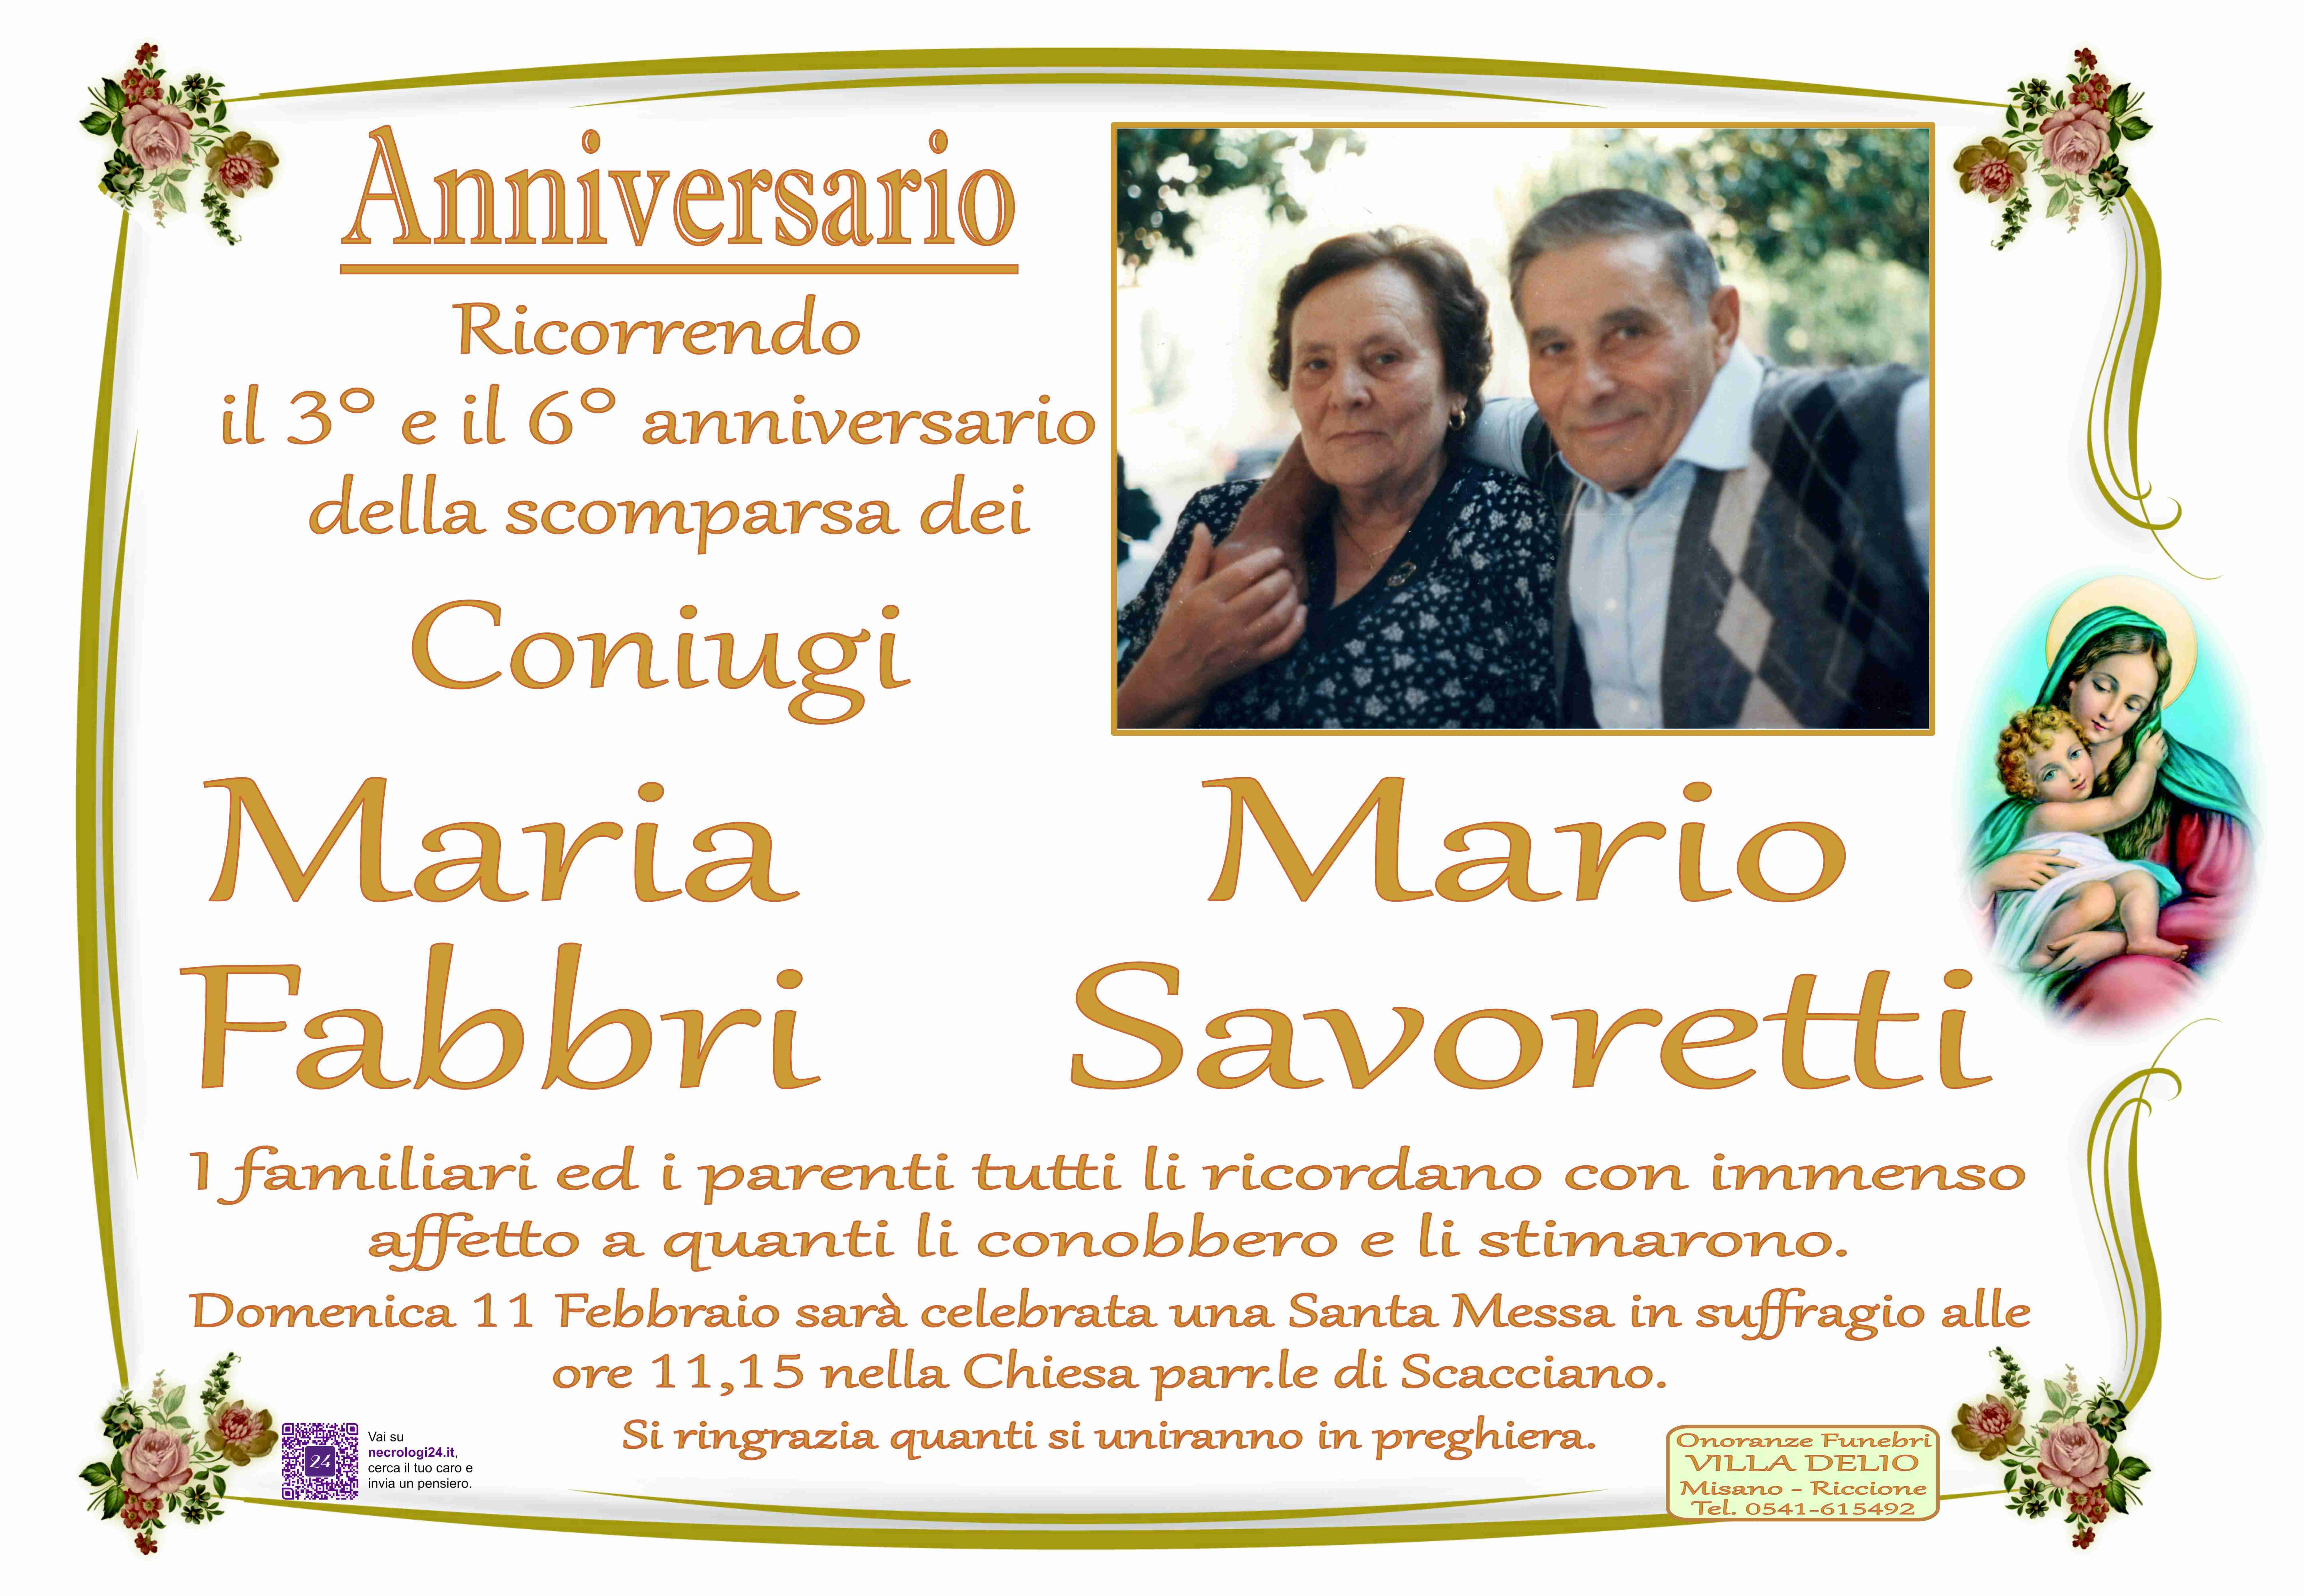 Mario Savoretti e Maria Fabbri